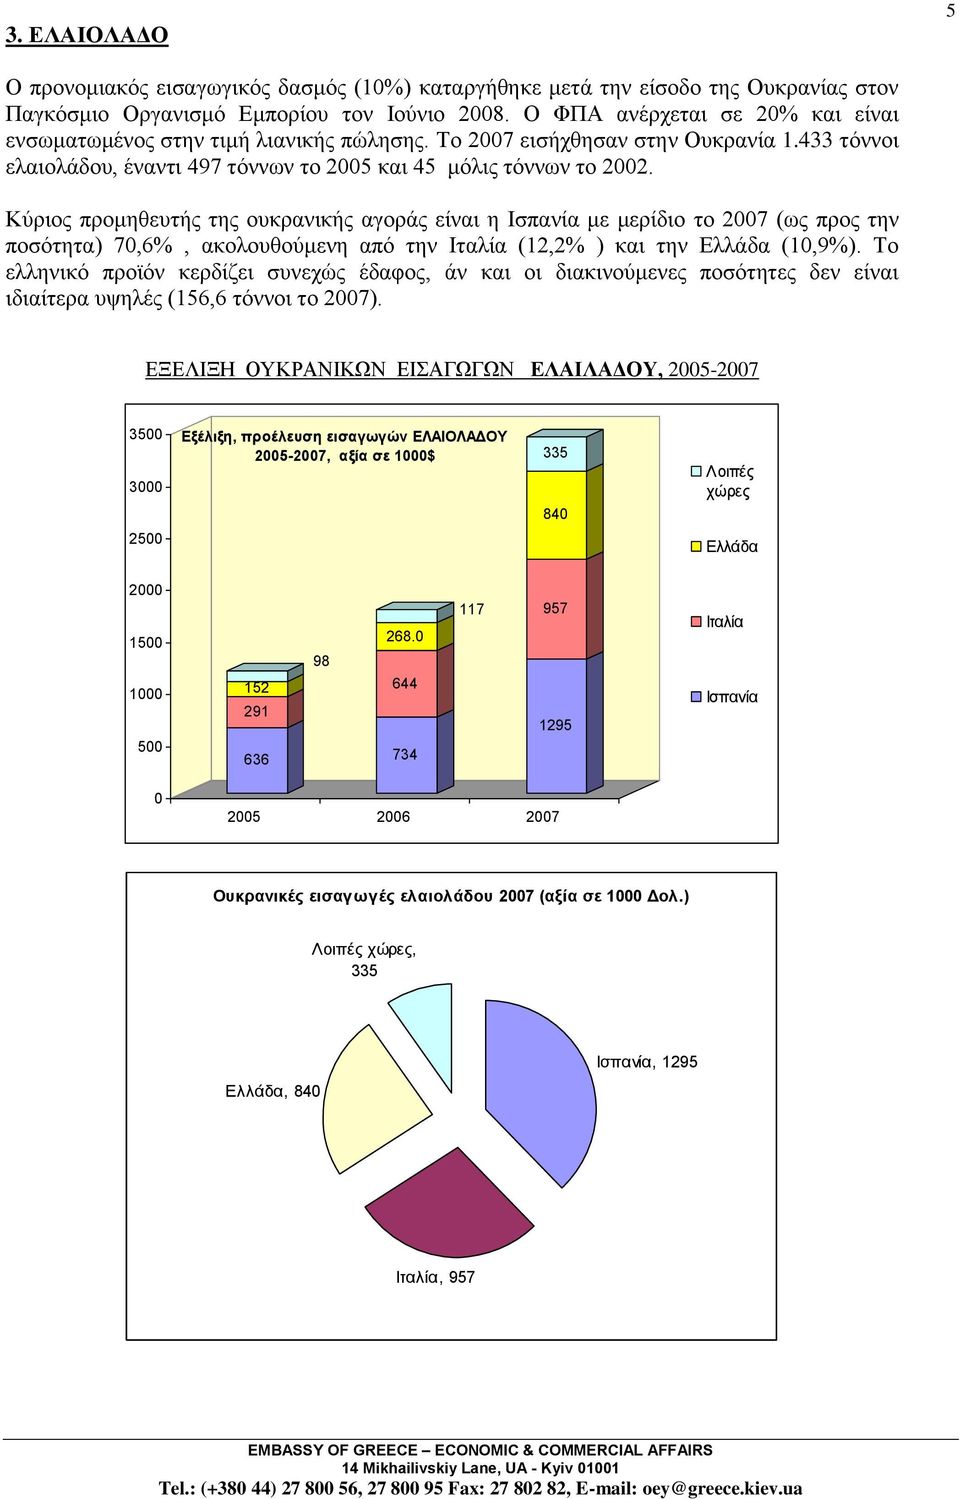 Κχξηνο πξνκεζεπηήο ηεο νπθξαληθήο αγνξάο είλαη ε Ιζπαλία κε κεξίδην ην 2007 (σο πξνο ηελ πνζφηεηα) 70,6%, αθνινπζνχκελε απφ ηελ Ιηαιία (12,2% ) θαη ηελ Διιάδα (10,9%).